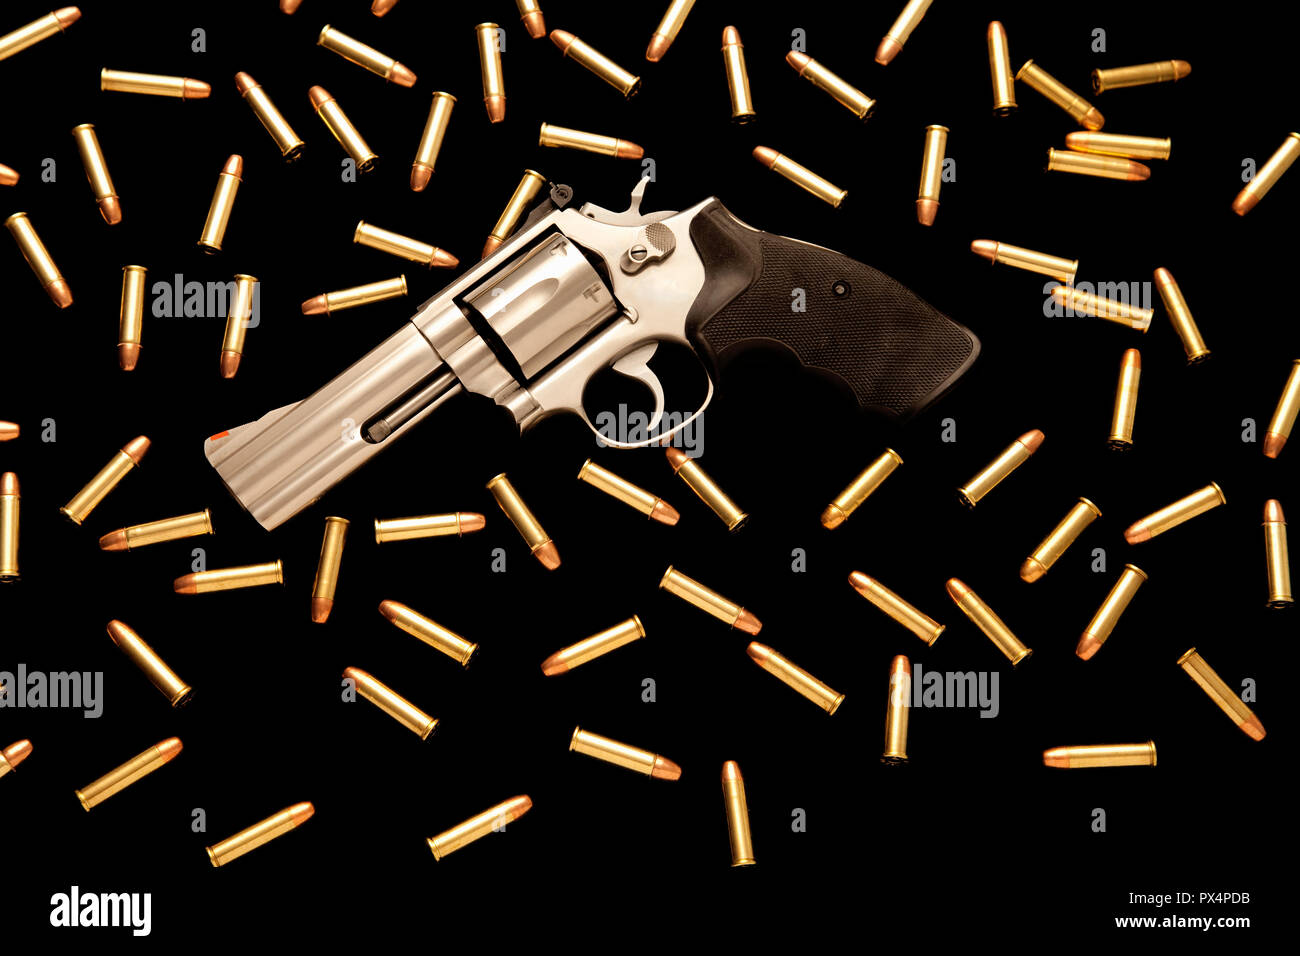 guns and ammunition Stock Photo